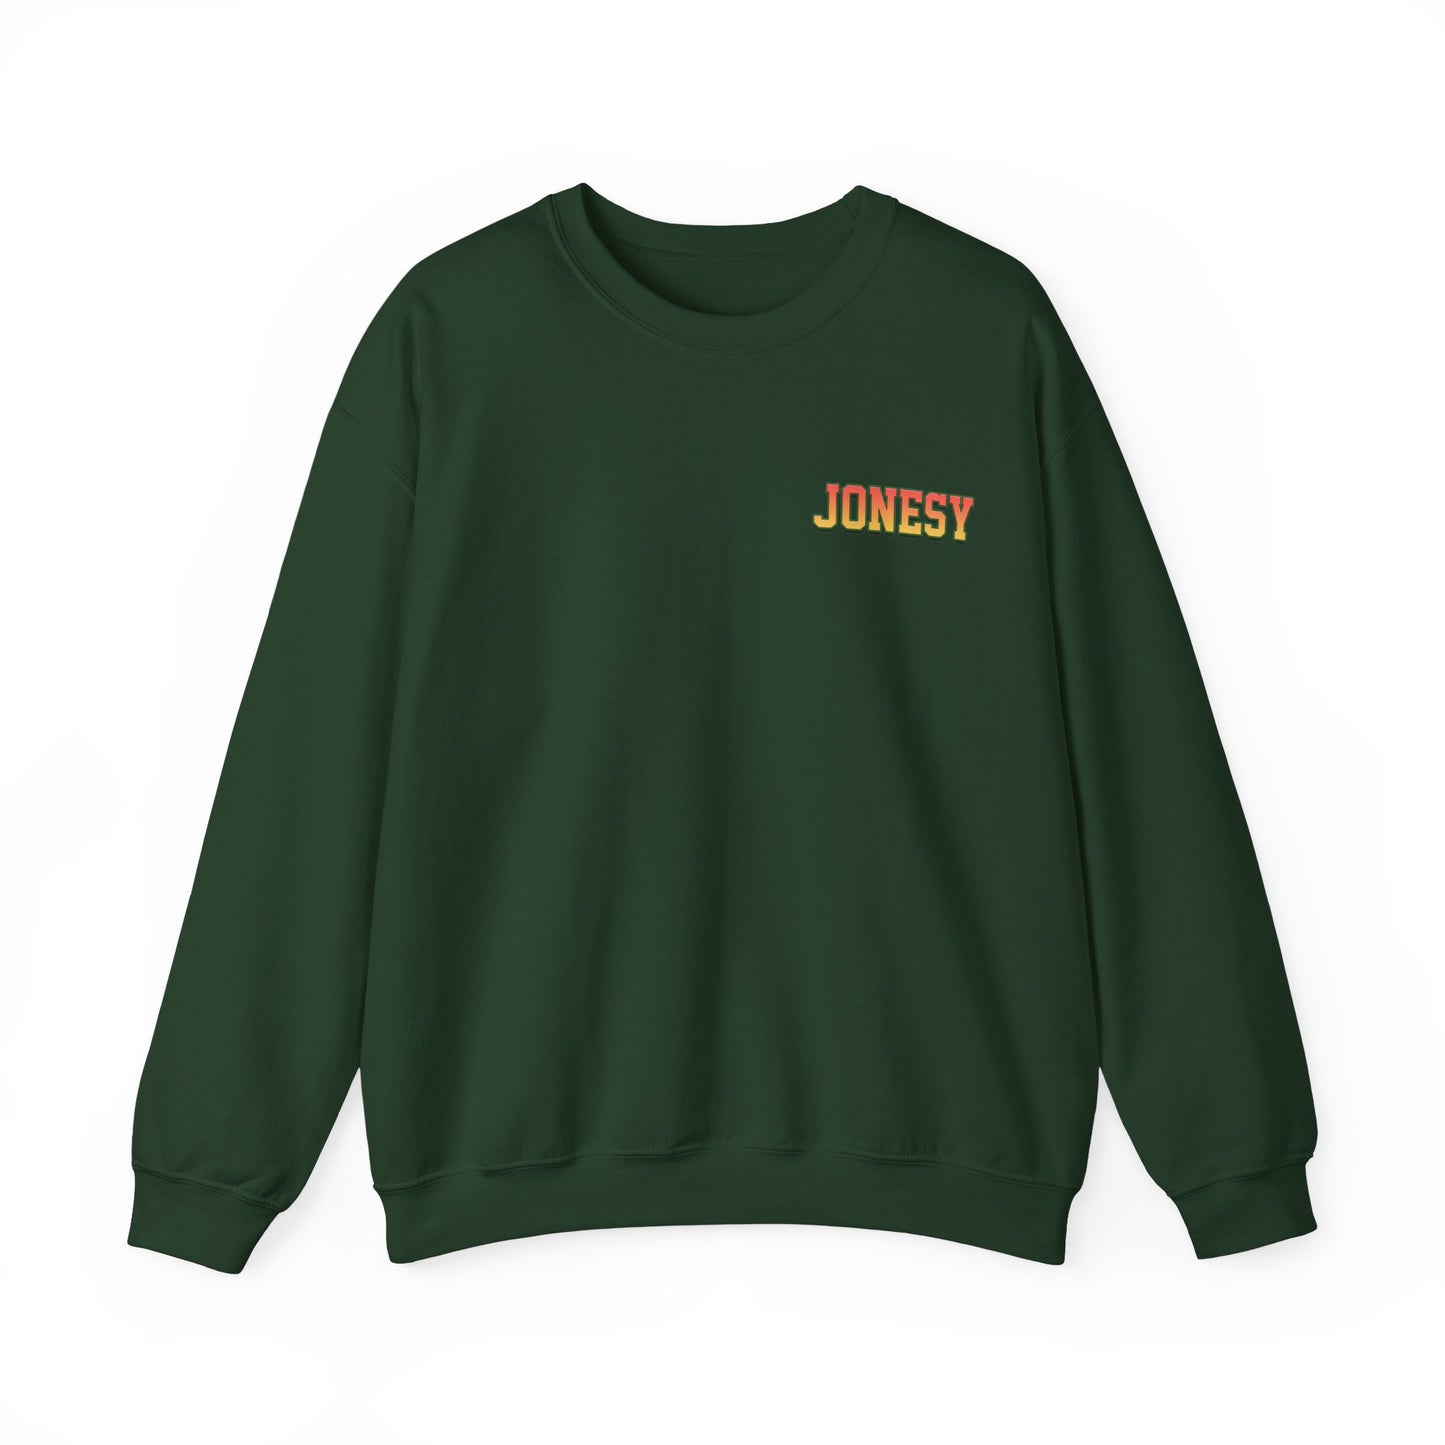 Jonesy Crewneck Sweatshirt